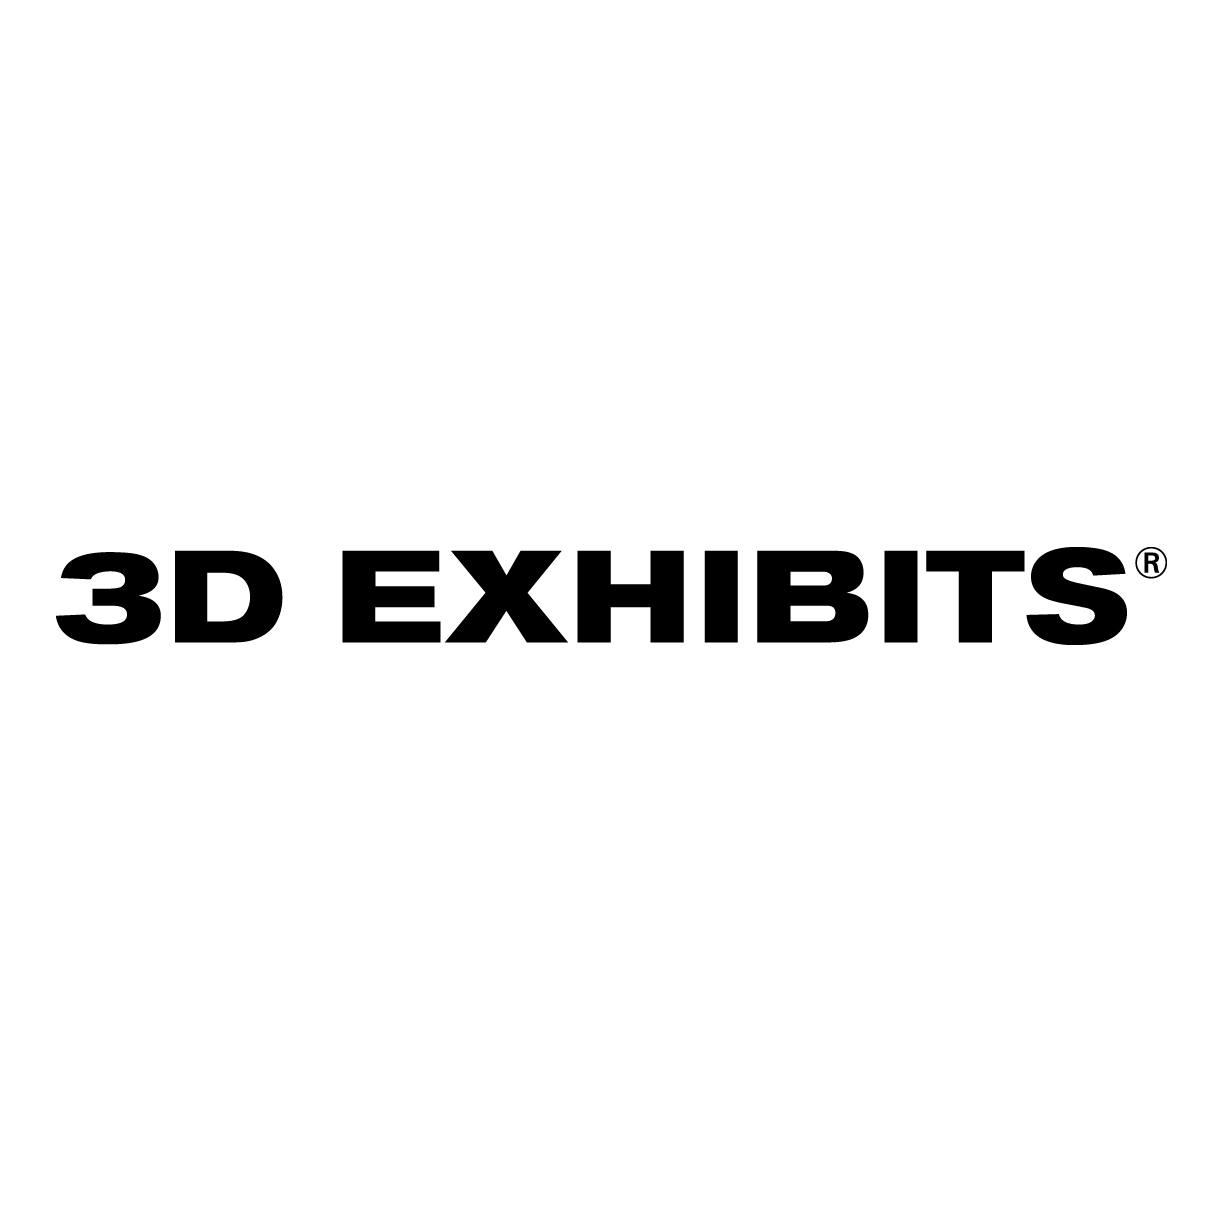 3D exhibits